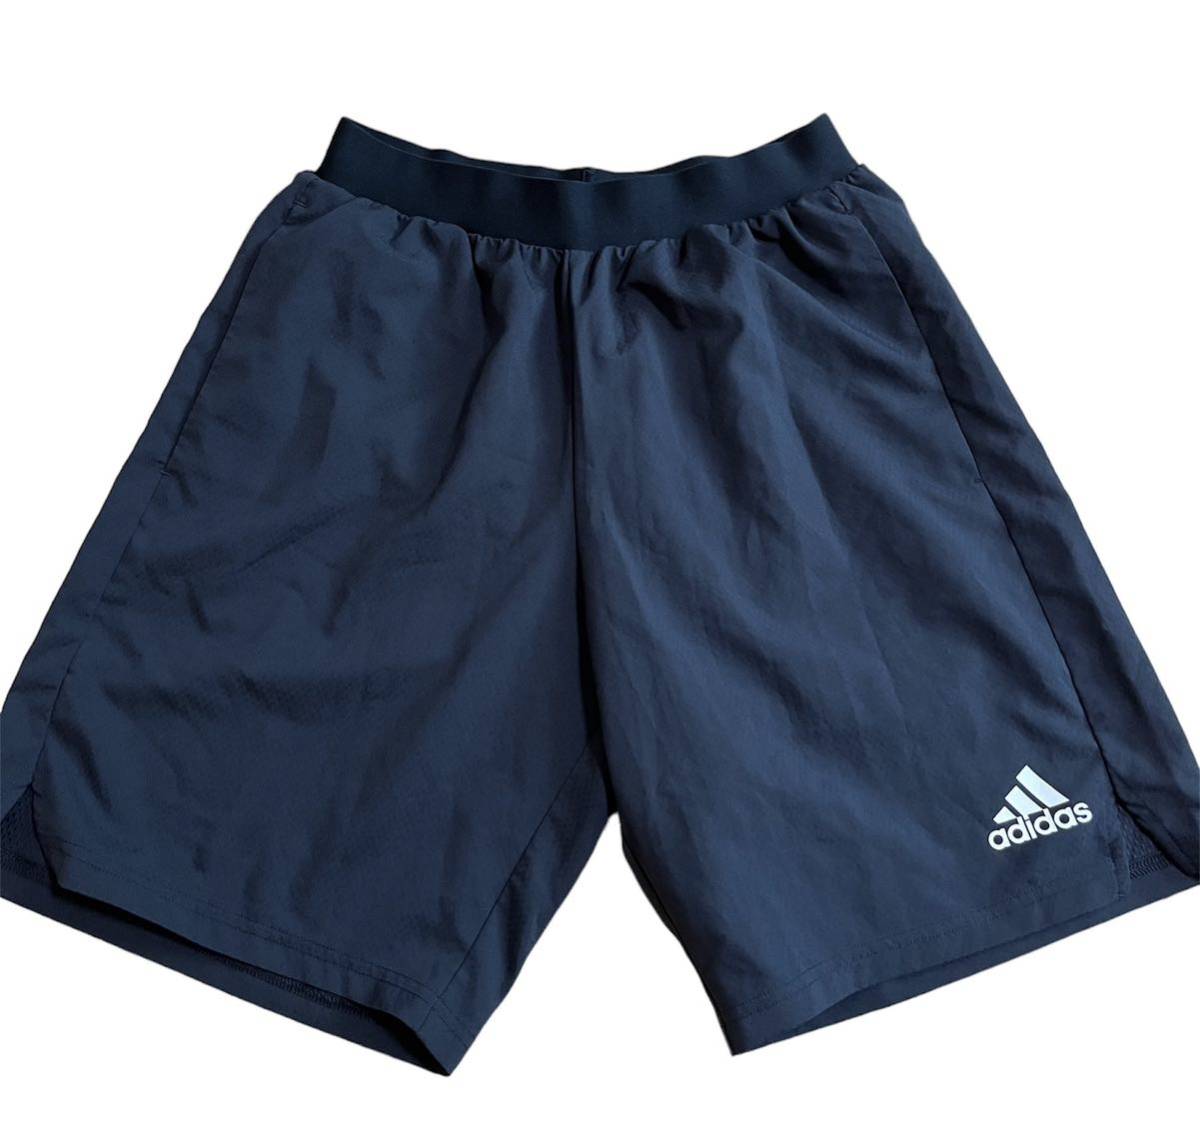 [ прекрасный б/у товар ] adidas Adidas шорты шорты футбол футзал тренировка марафон бег размер L